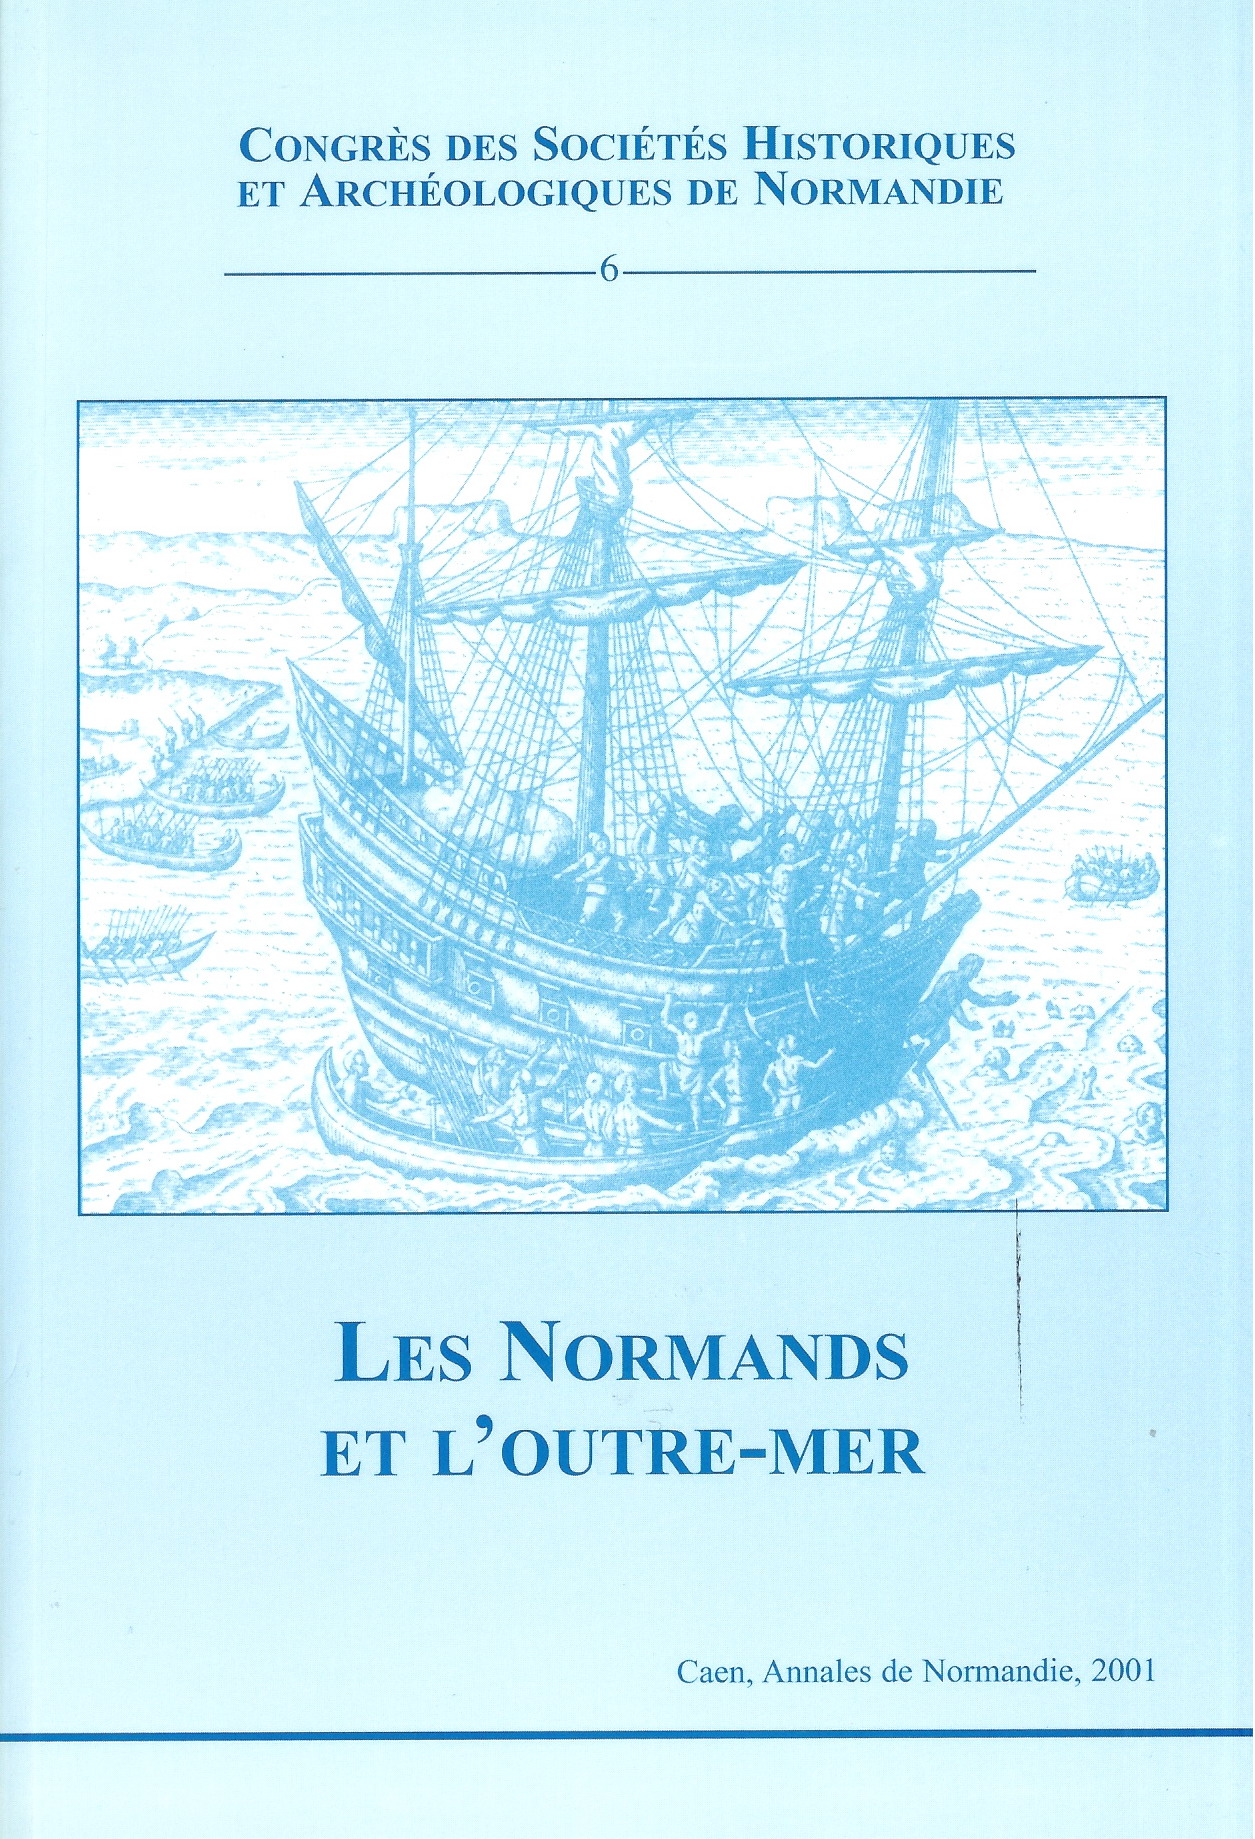 Les Normands et l’outre-mer